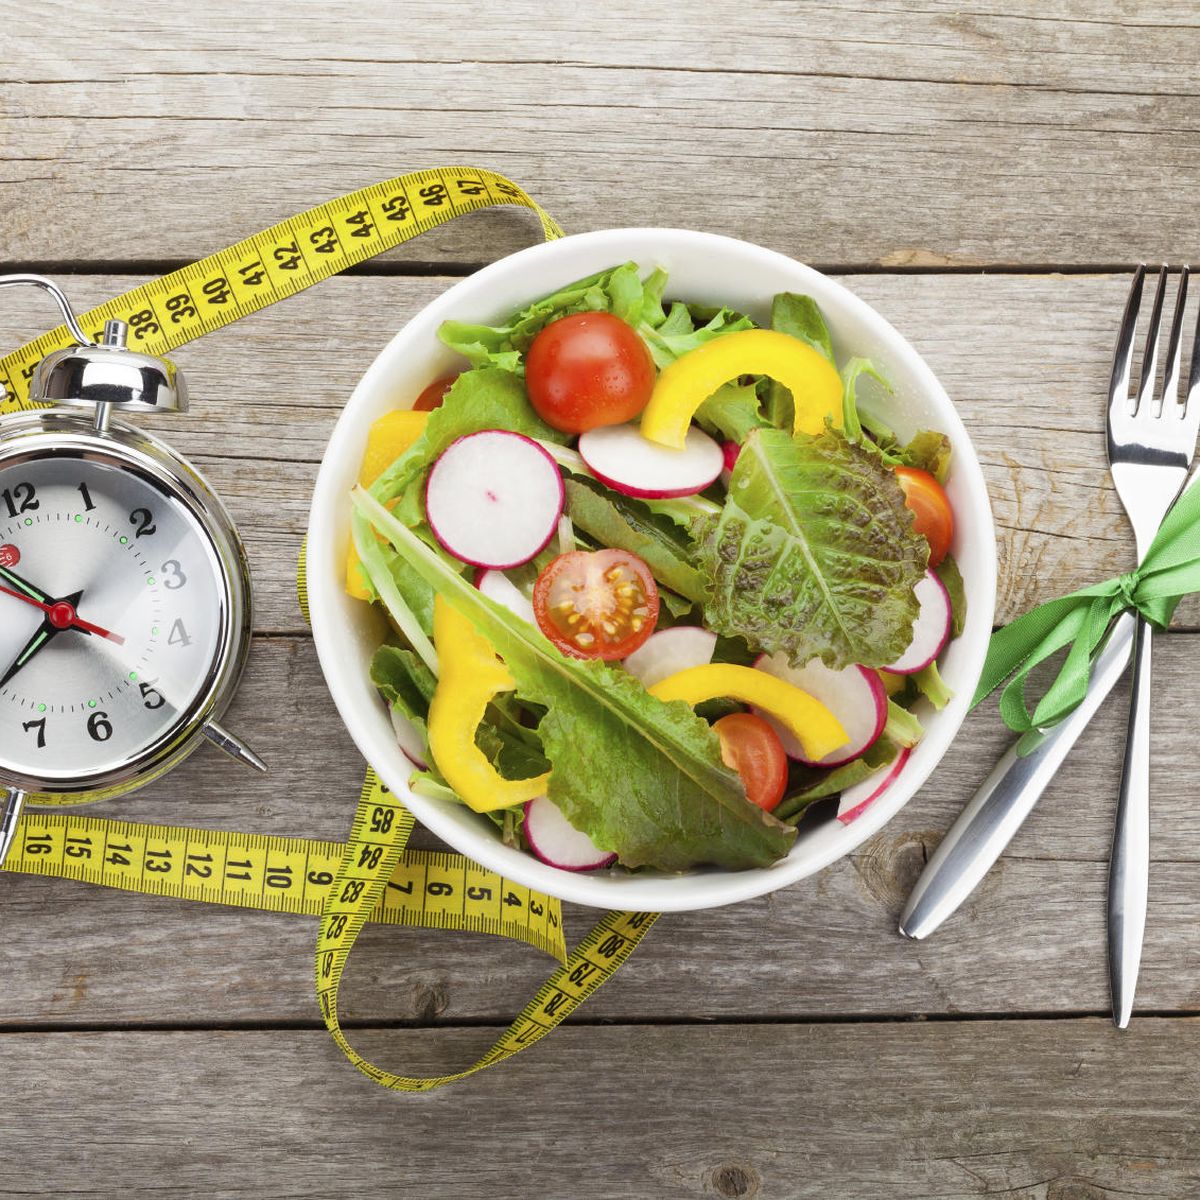 Sí, perder peso sin pasar hambre ni hacer dieta es posible, elige